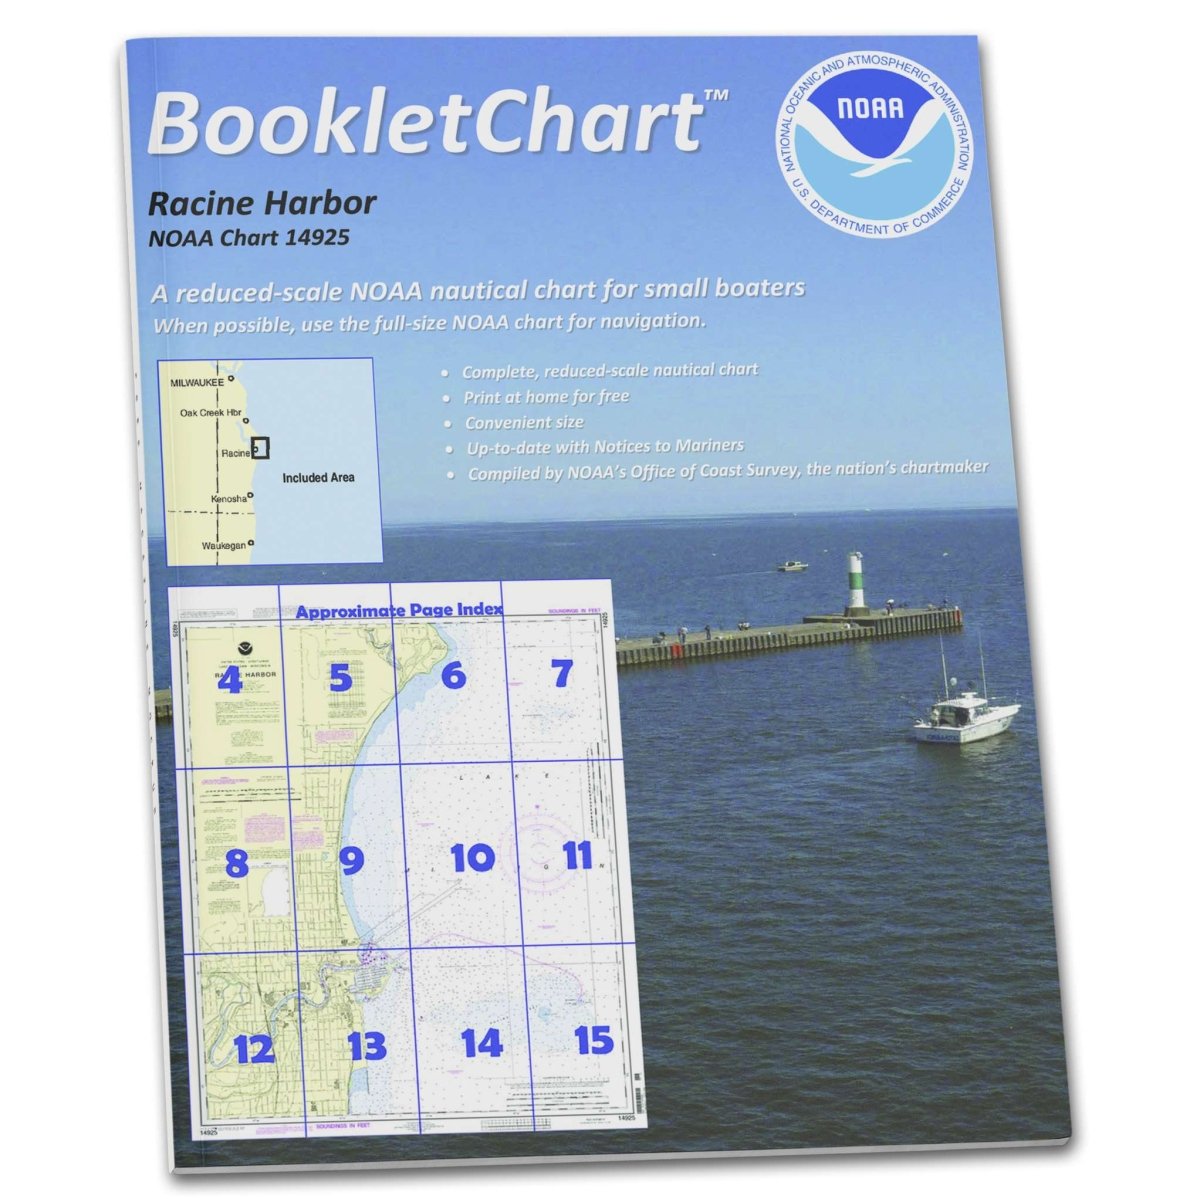 Historical NOAA Booklet Chart 14925: Racine Harbor - Life Raft Professionals